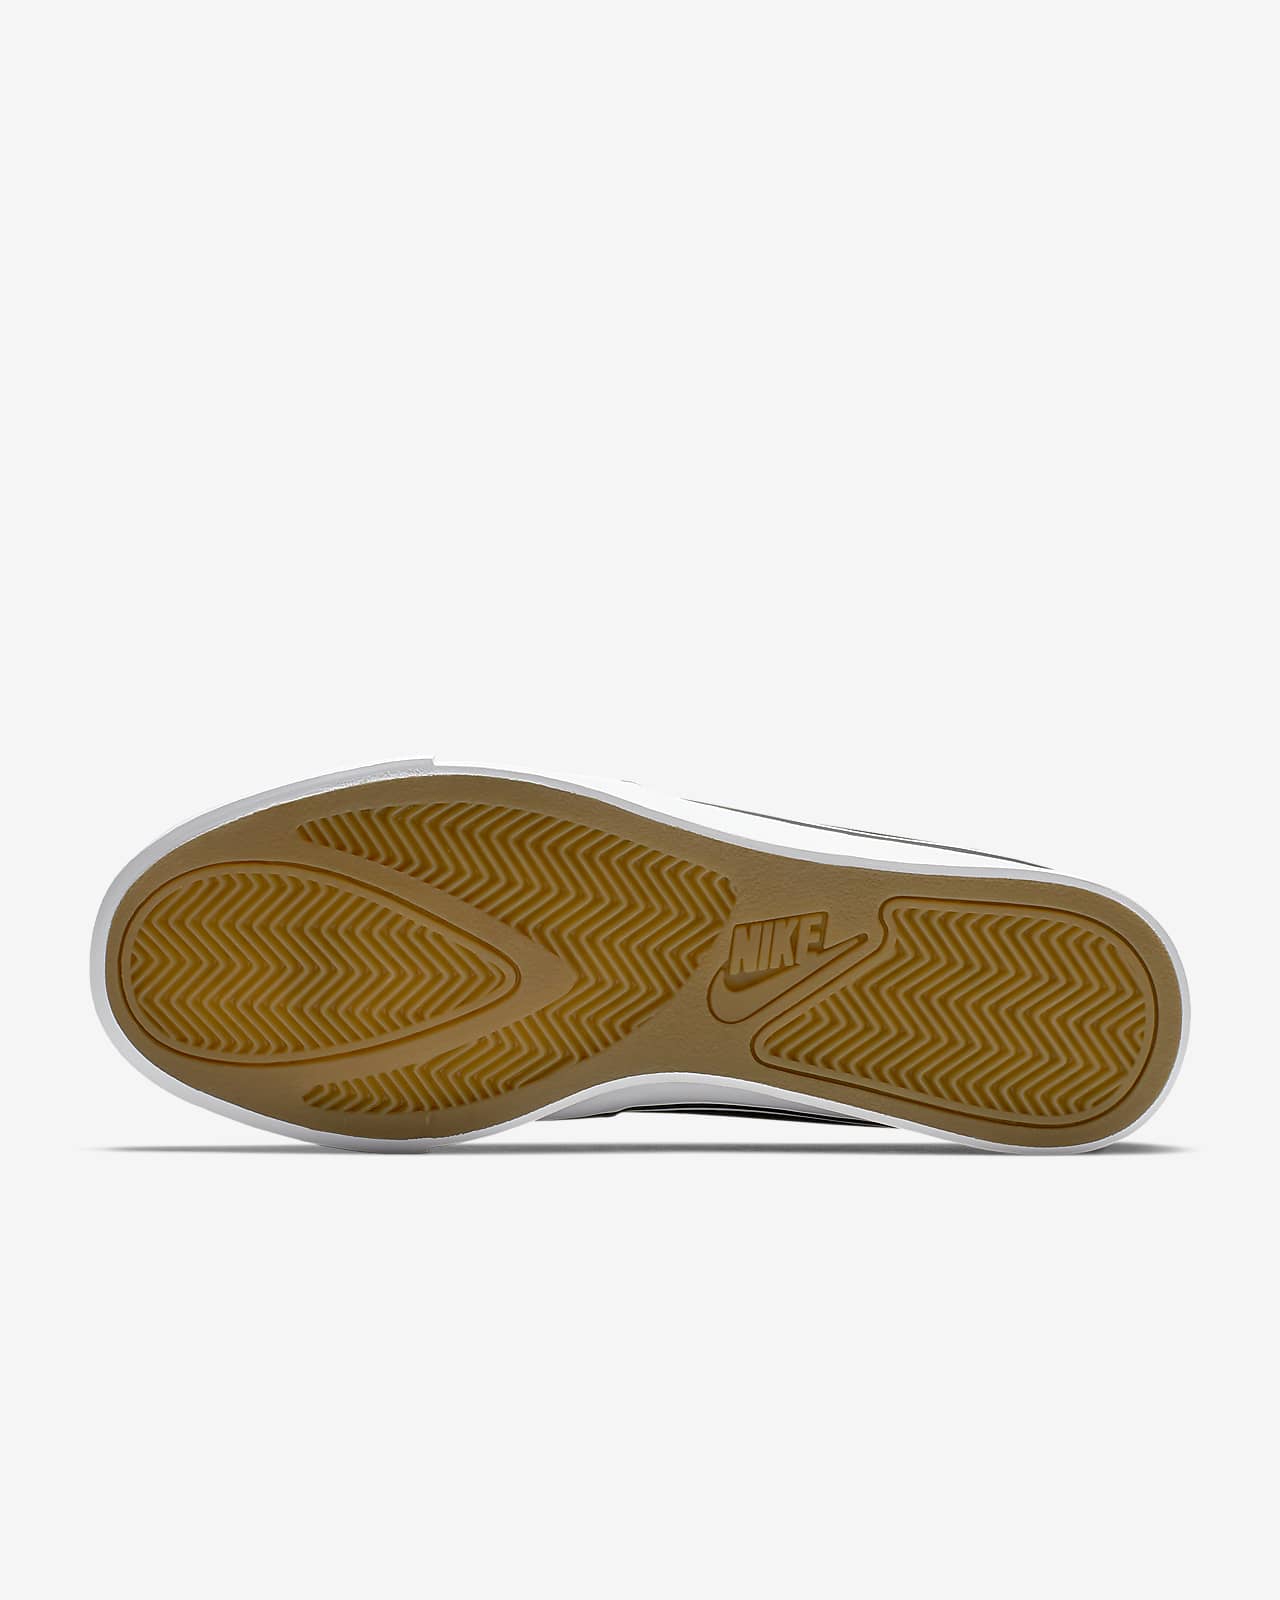 Nike Royale AC Slip-On Shoes.